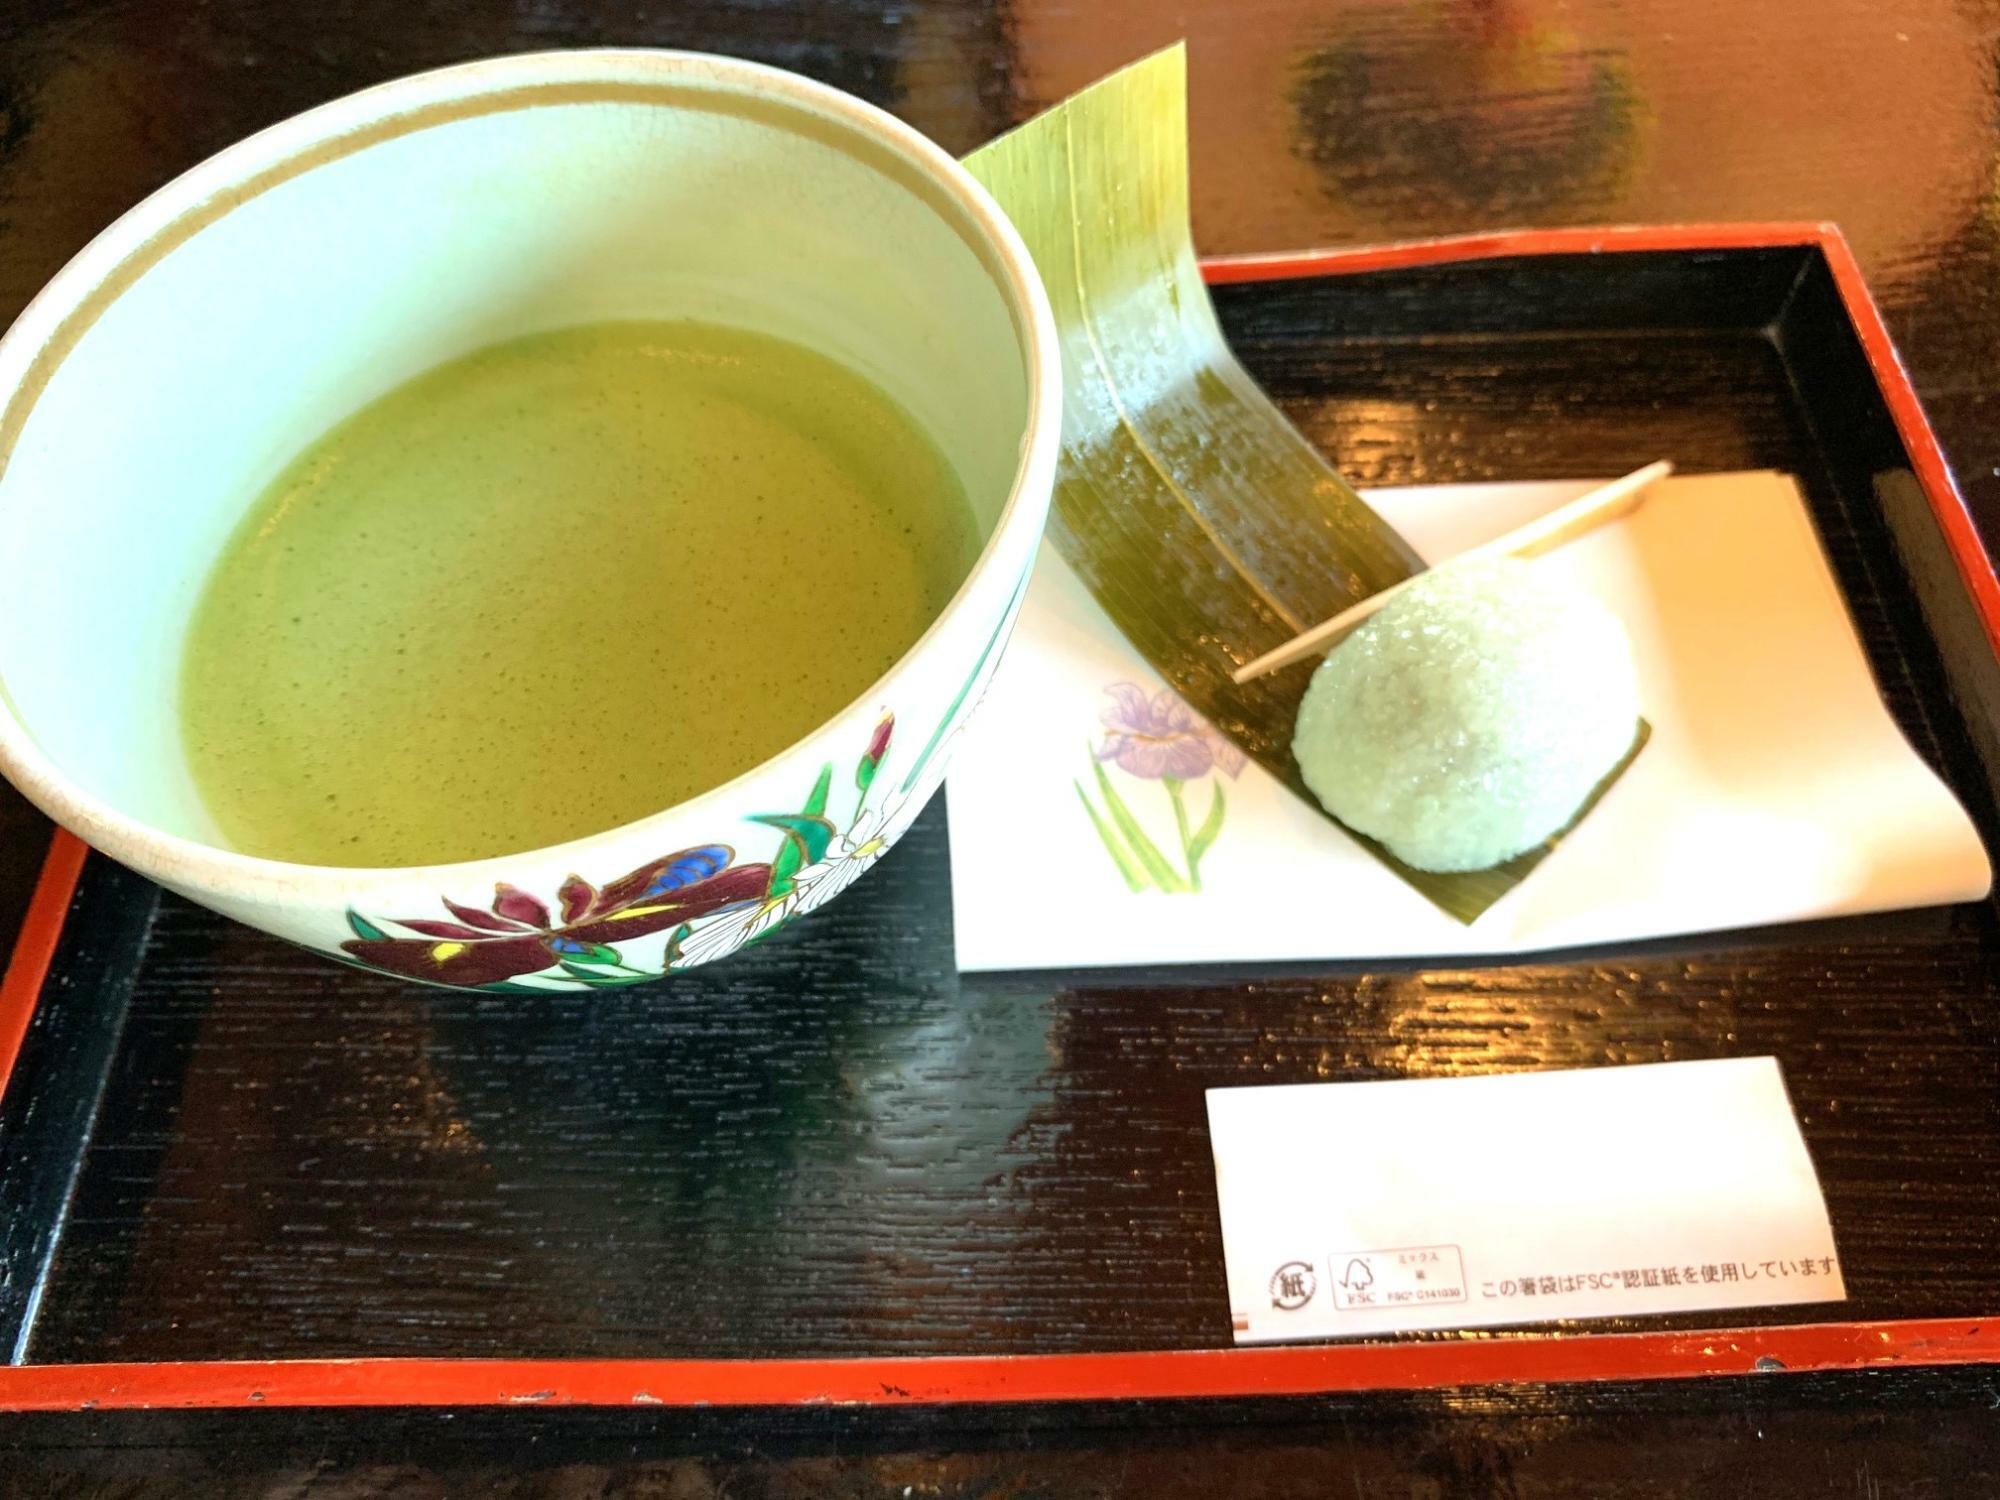 「お抹茶と季節のお菓子」350円